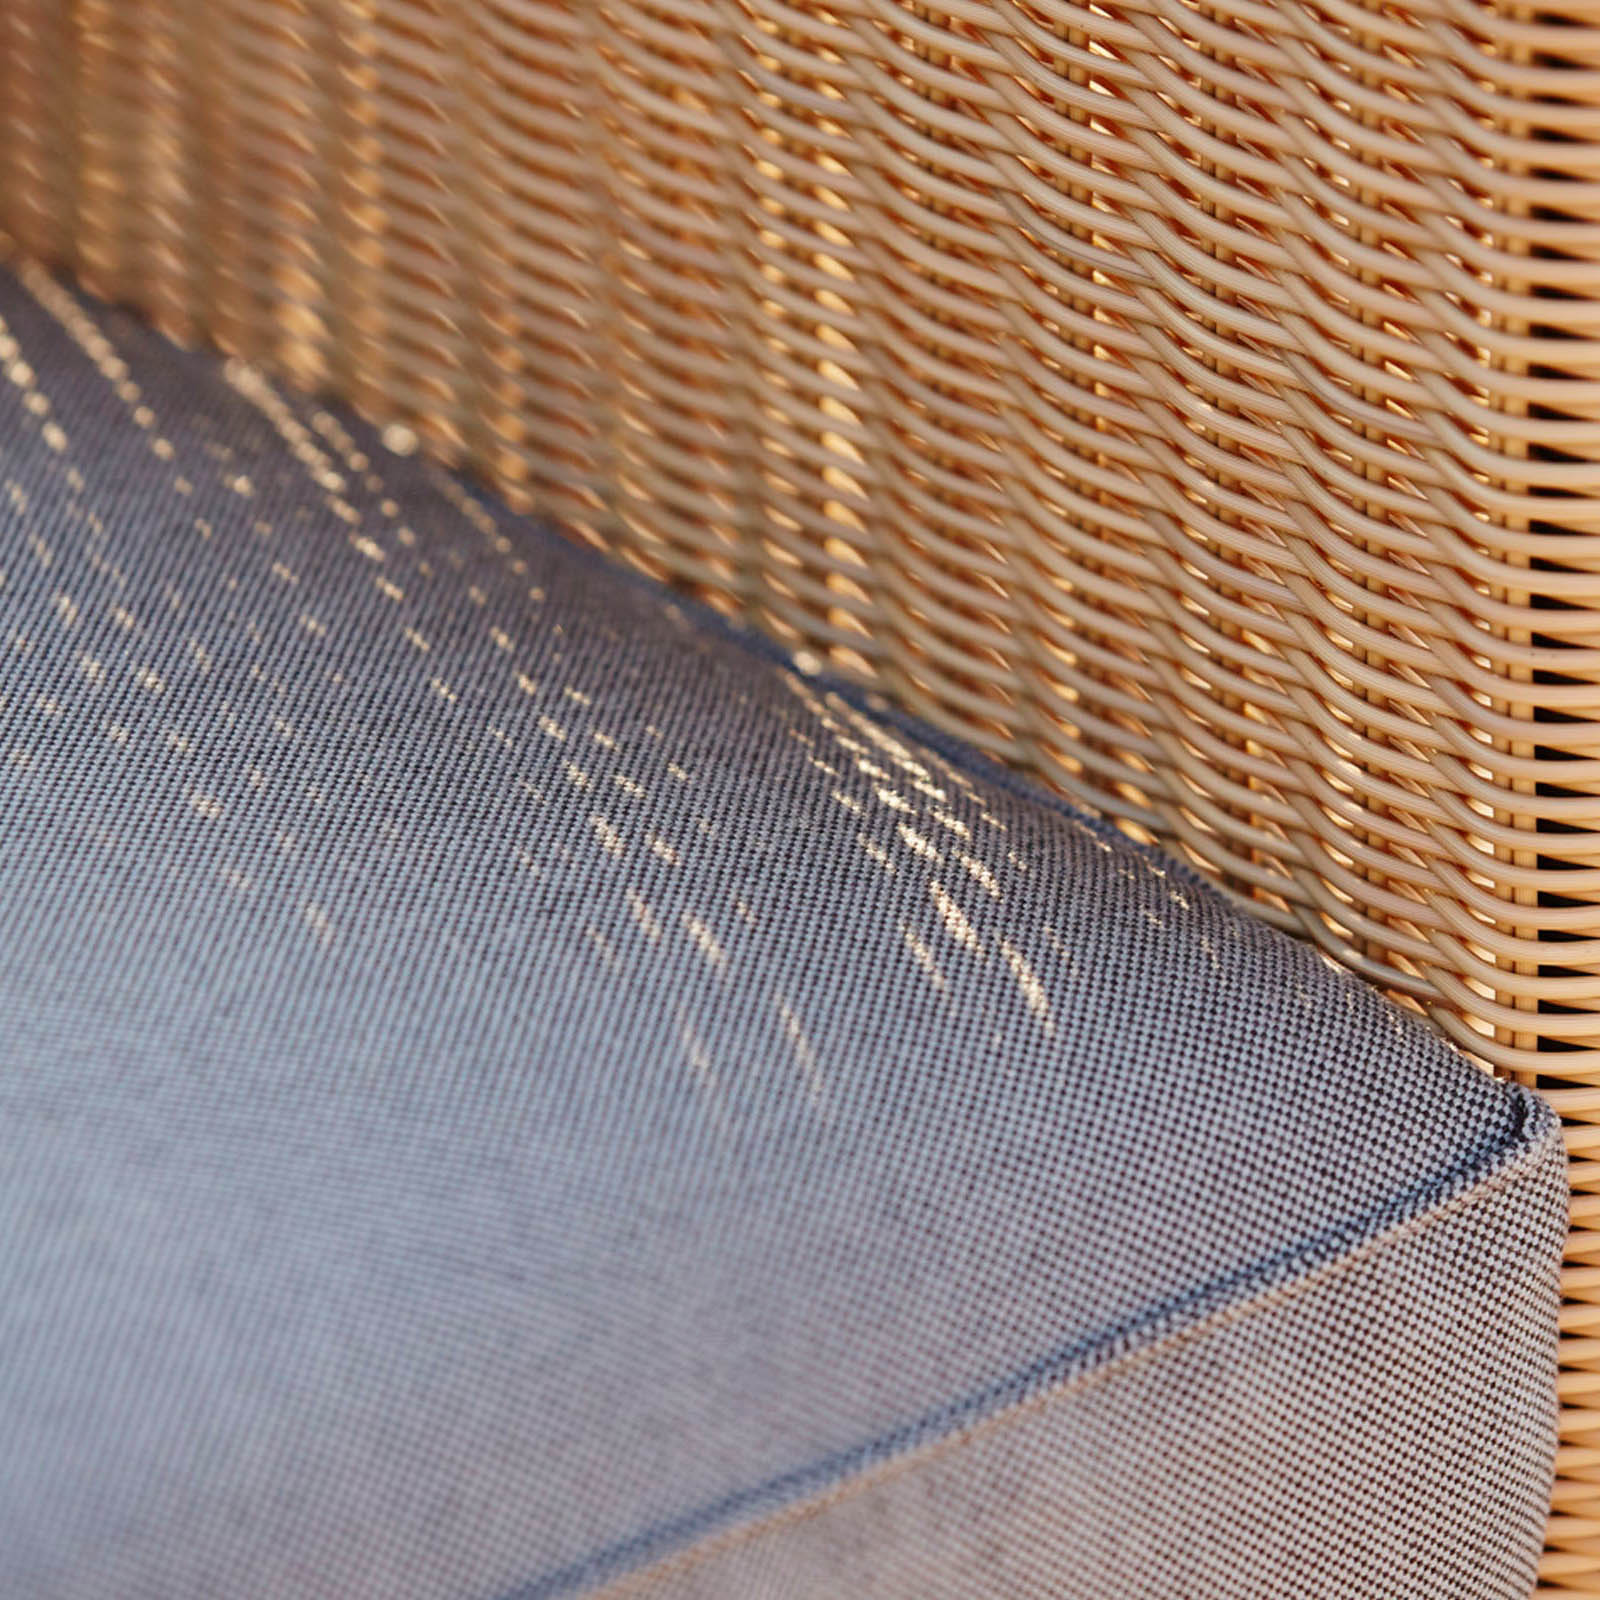 Chester 3-Sitzer Sofa aus Cane-line Weave in Graphite mit Kissen aus Cane-line Natté in Light Grey